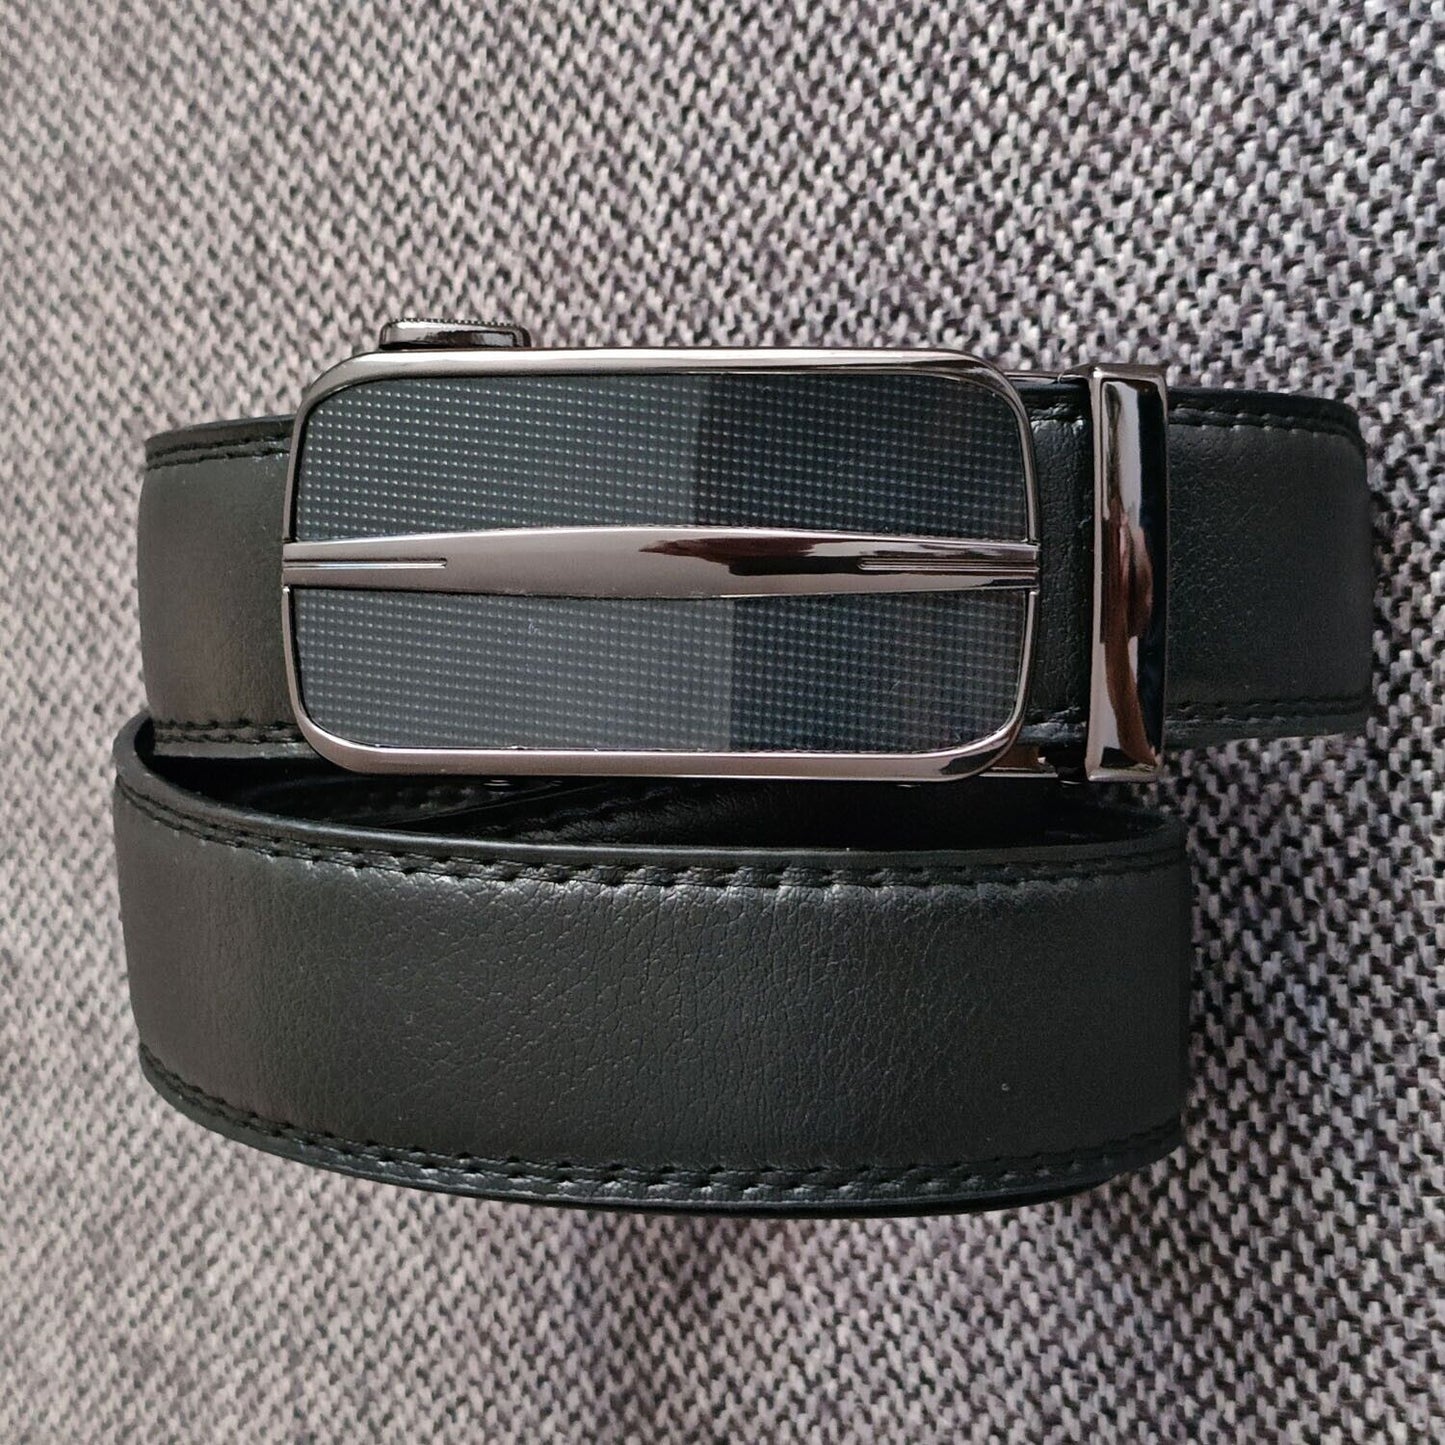 Men's Ratchet Belt Leather Mens Belt With Slide Buckle Ratchet Belts For Men USA - AFFORDABLE MARKET